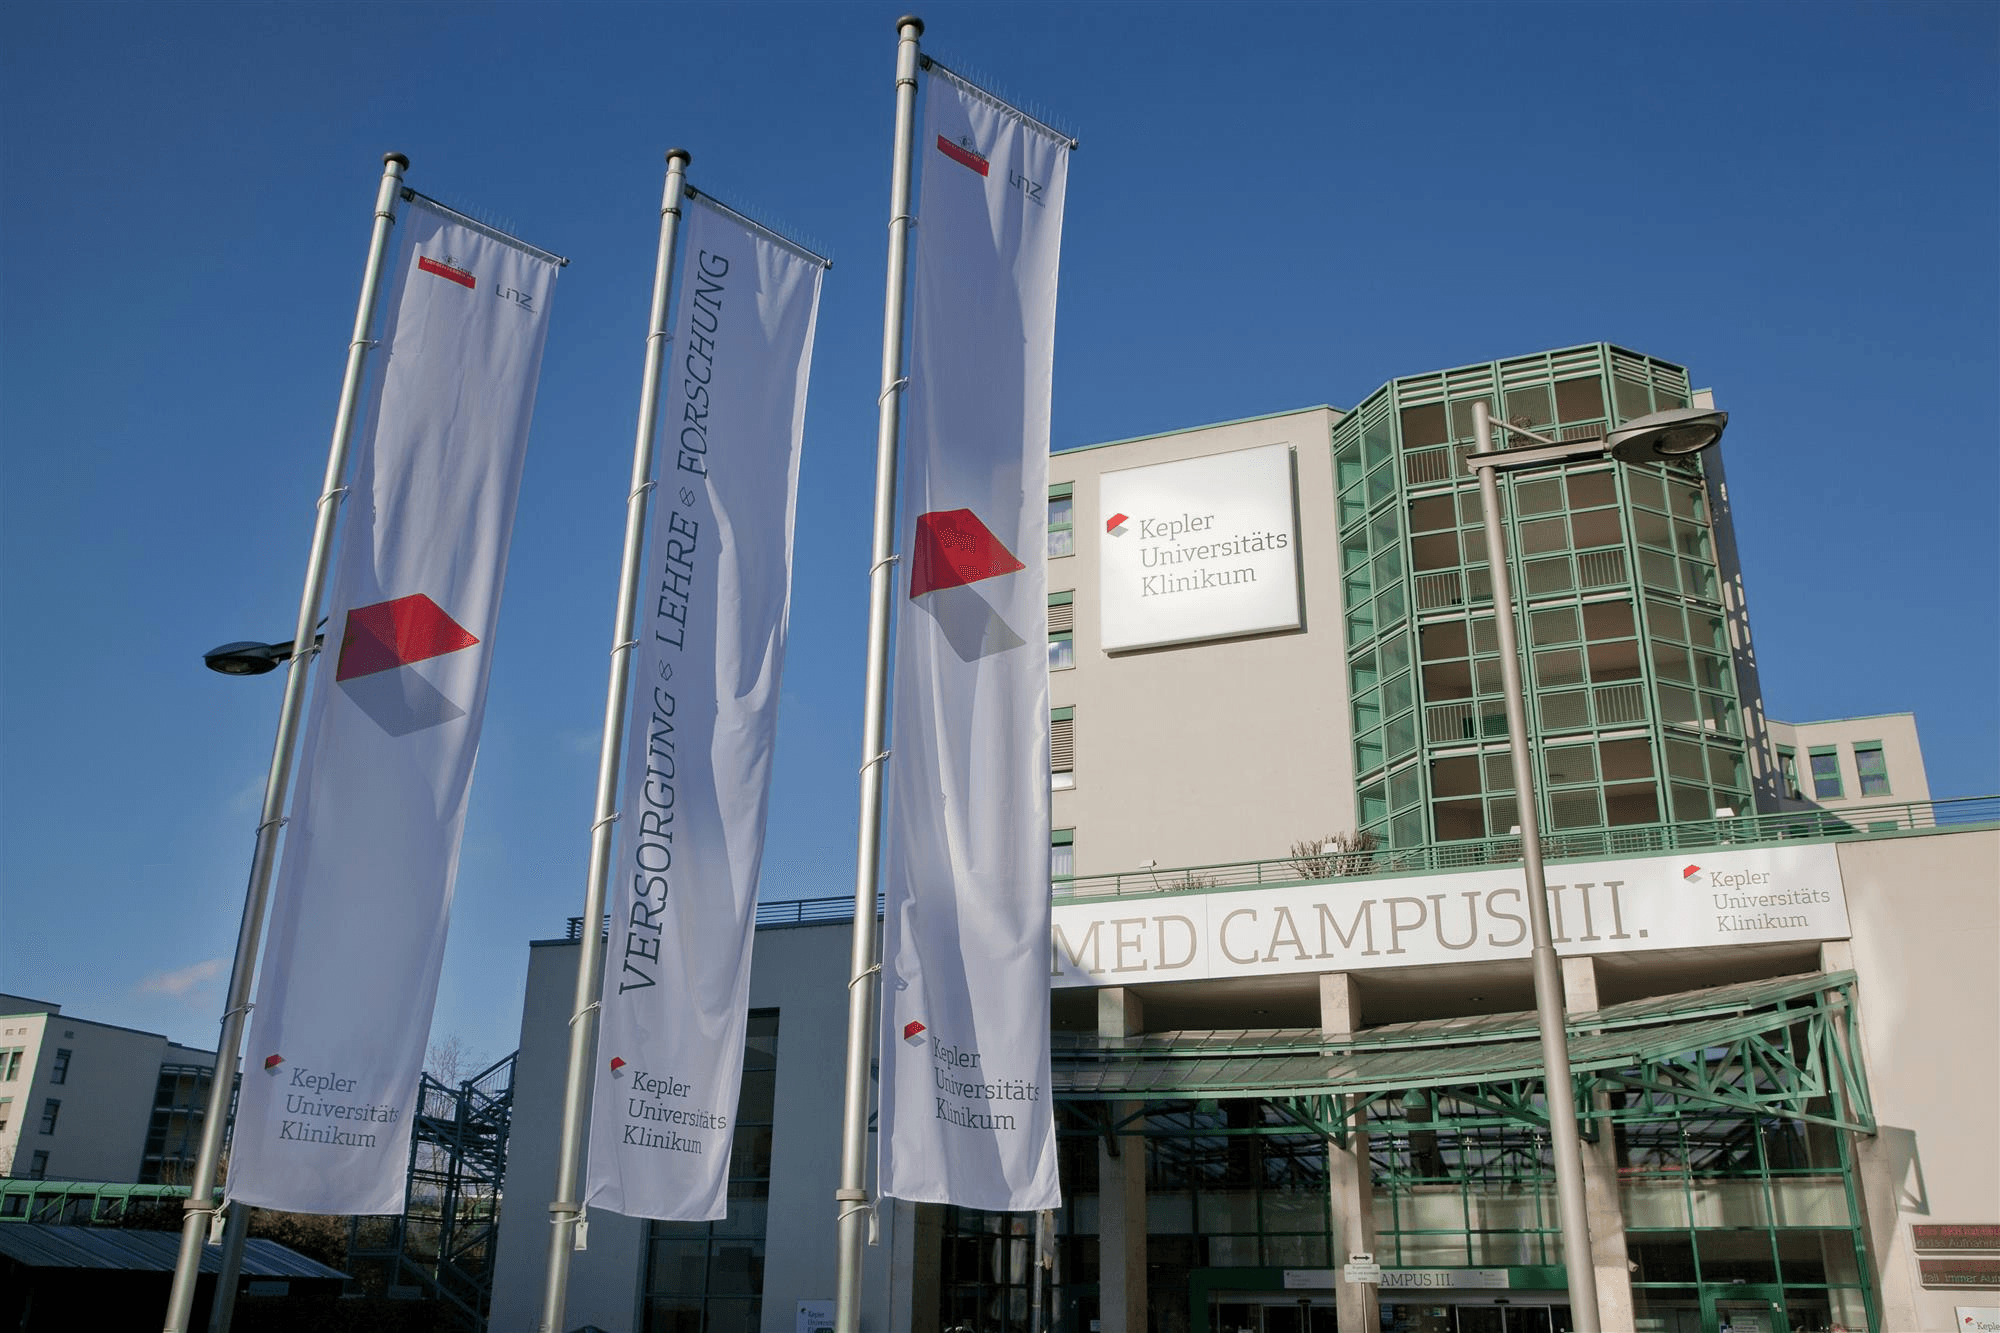 Vorschau - Foto 1 von Kepler Universitätsklinikum, Med Campus III. (vorm. Allg. Krankenhaus der Stadt Linz)